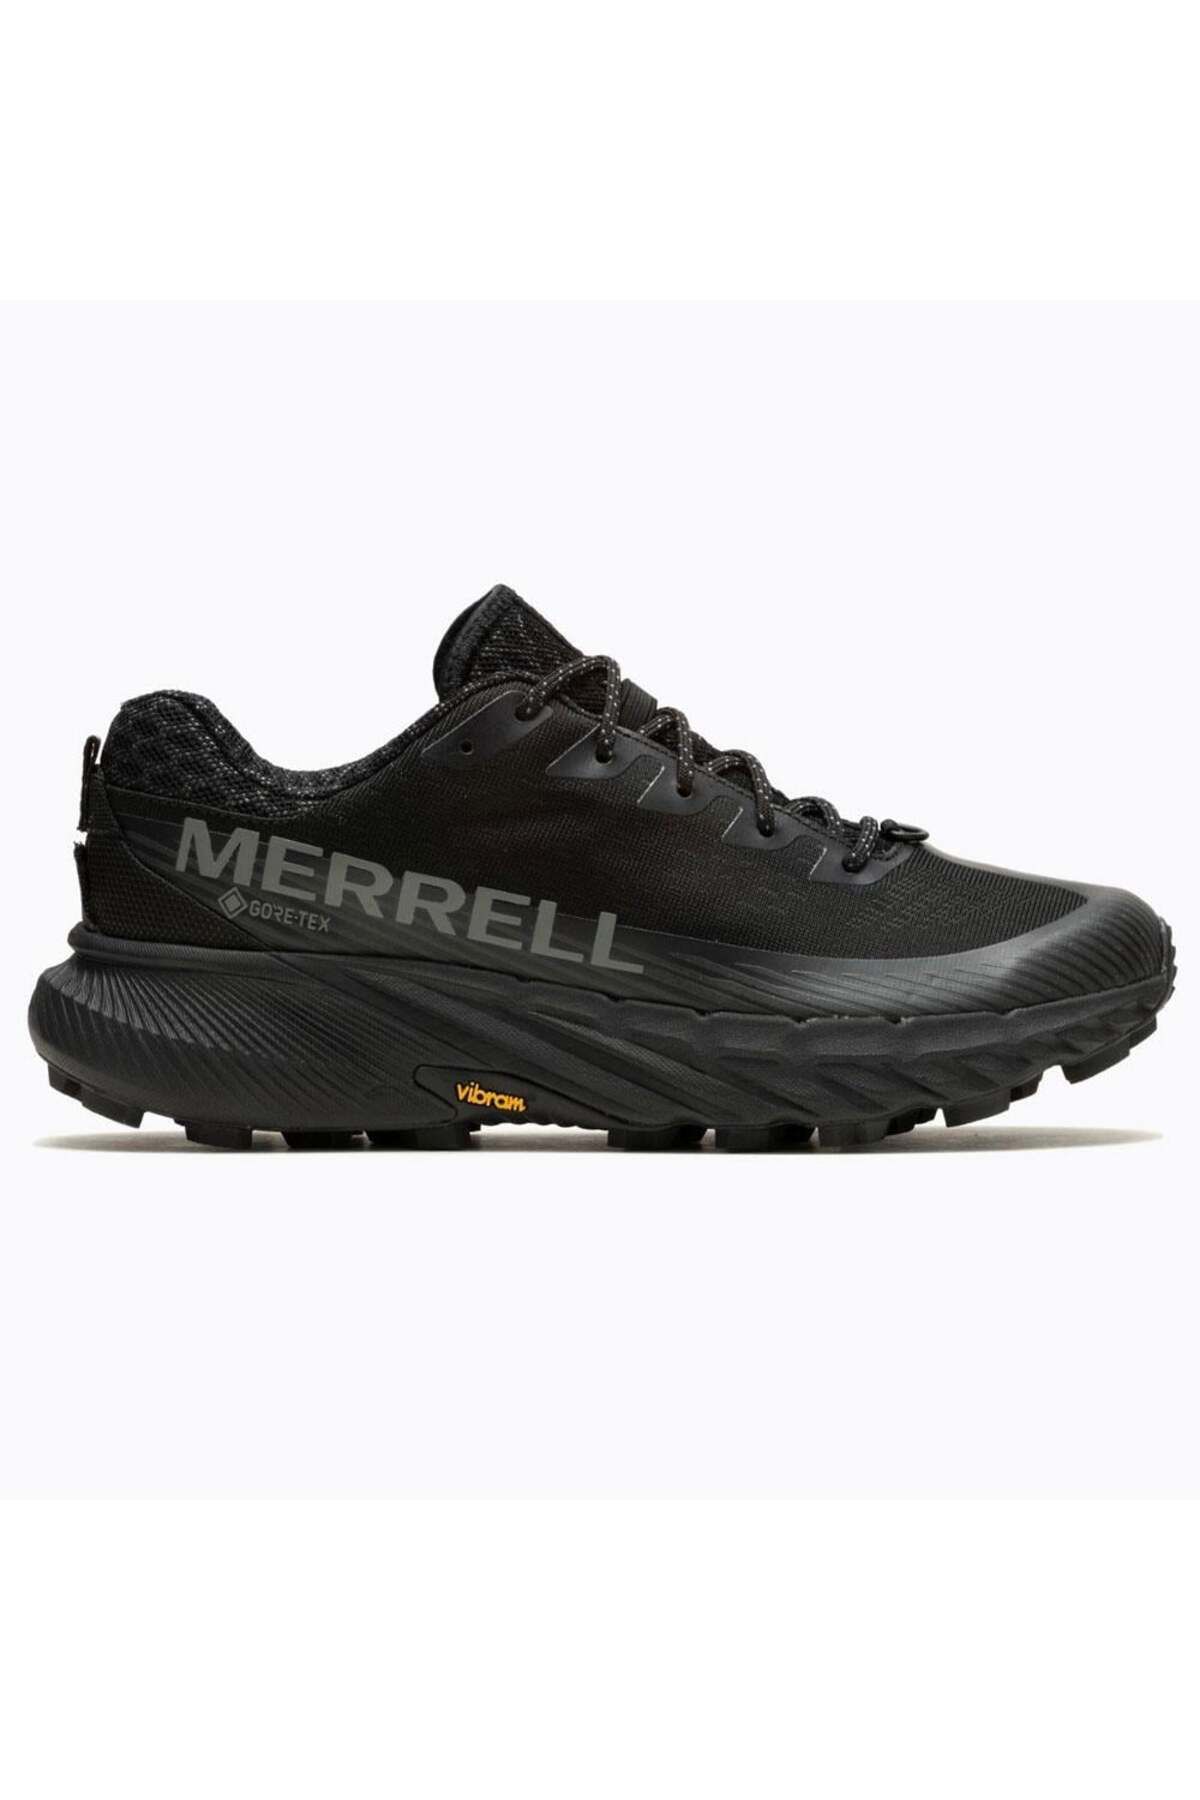 Merrell Agility Peak 5 Gtx Erkek Spor Ayakkabısı J067745